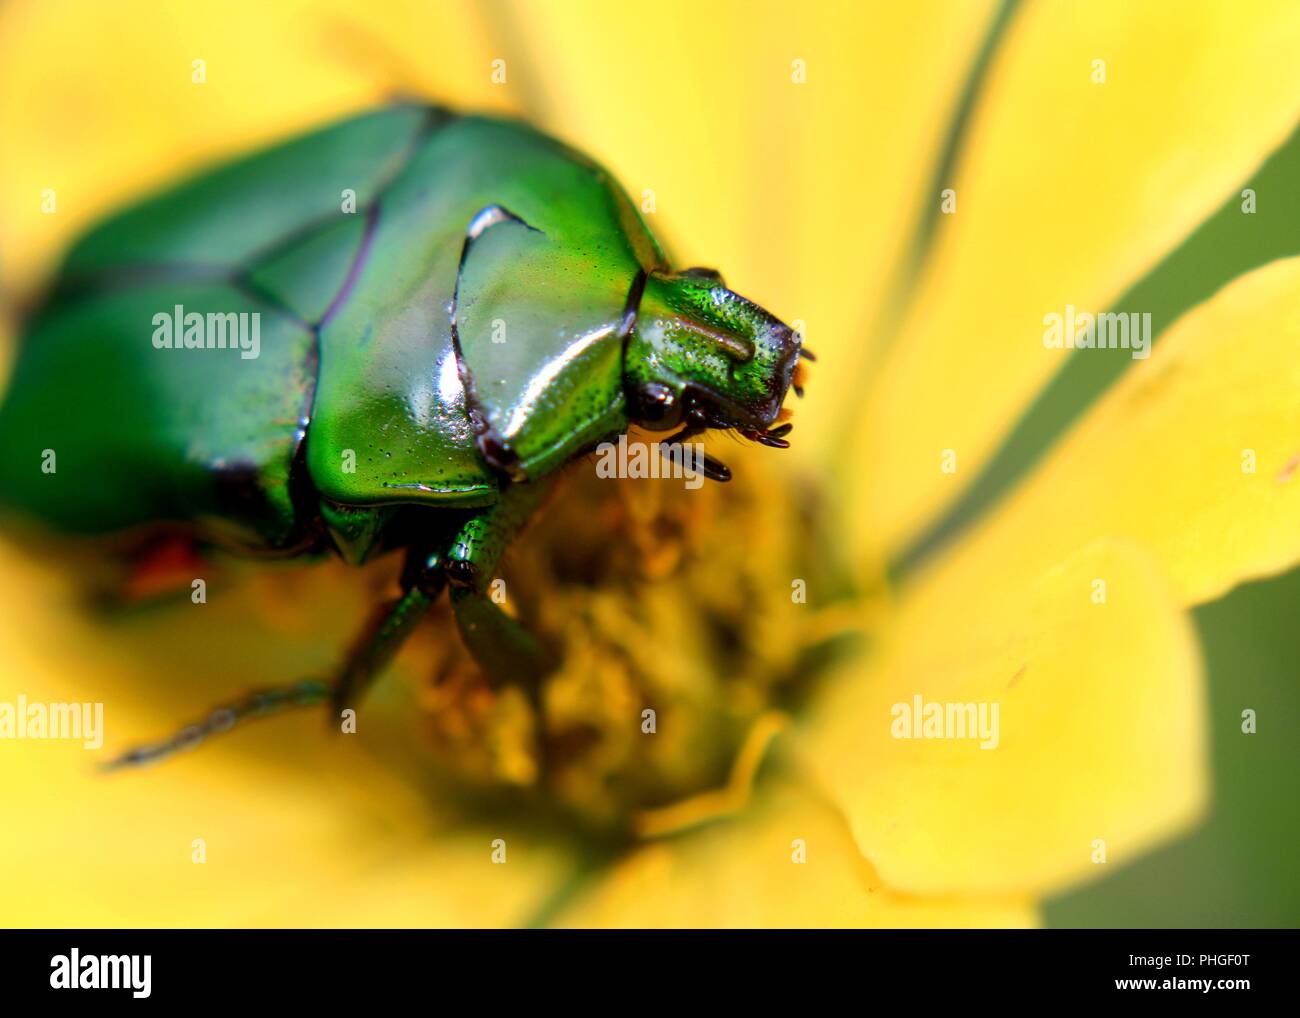 Cierre de un color verde luminoso de insectos, escarabajos, sagrado escarabeo encontrado en un jardín en Sri Lanka Foto de stock